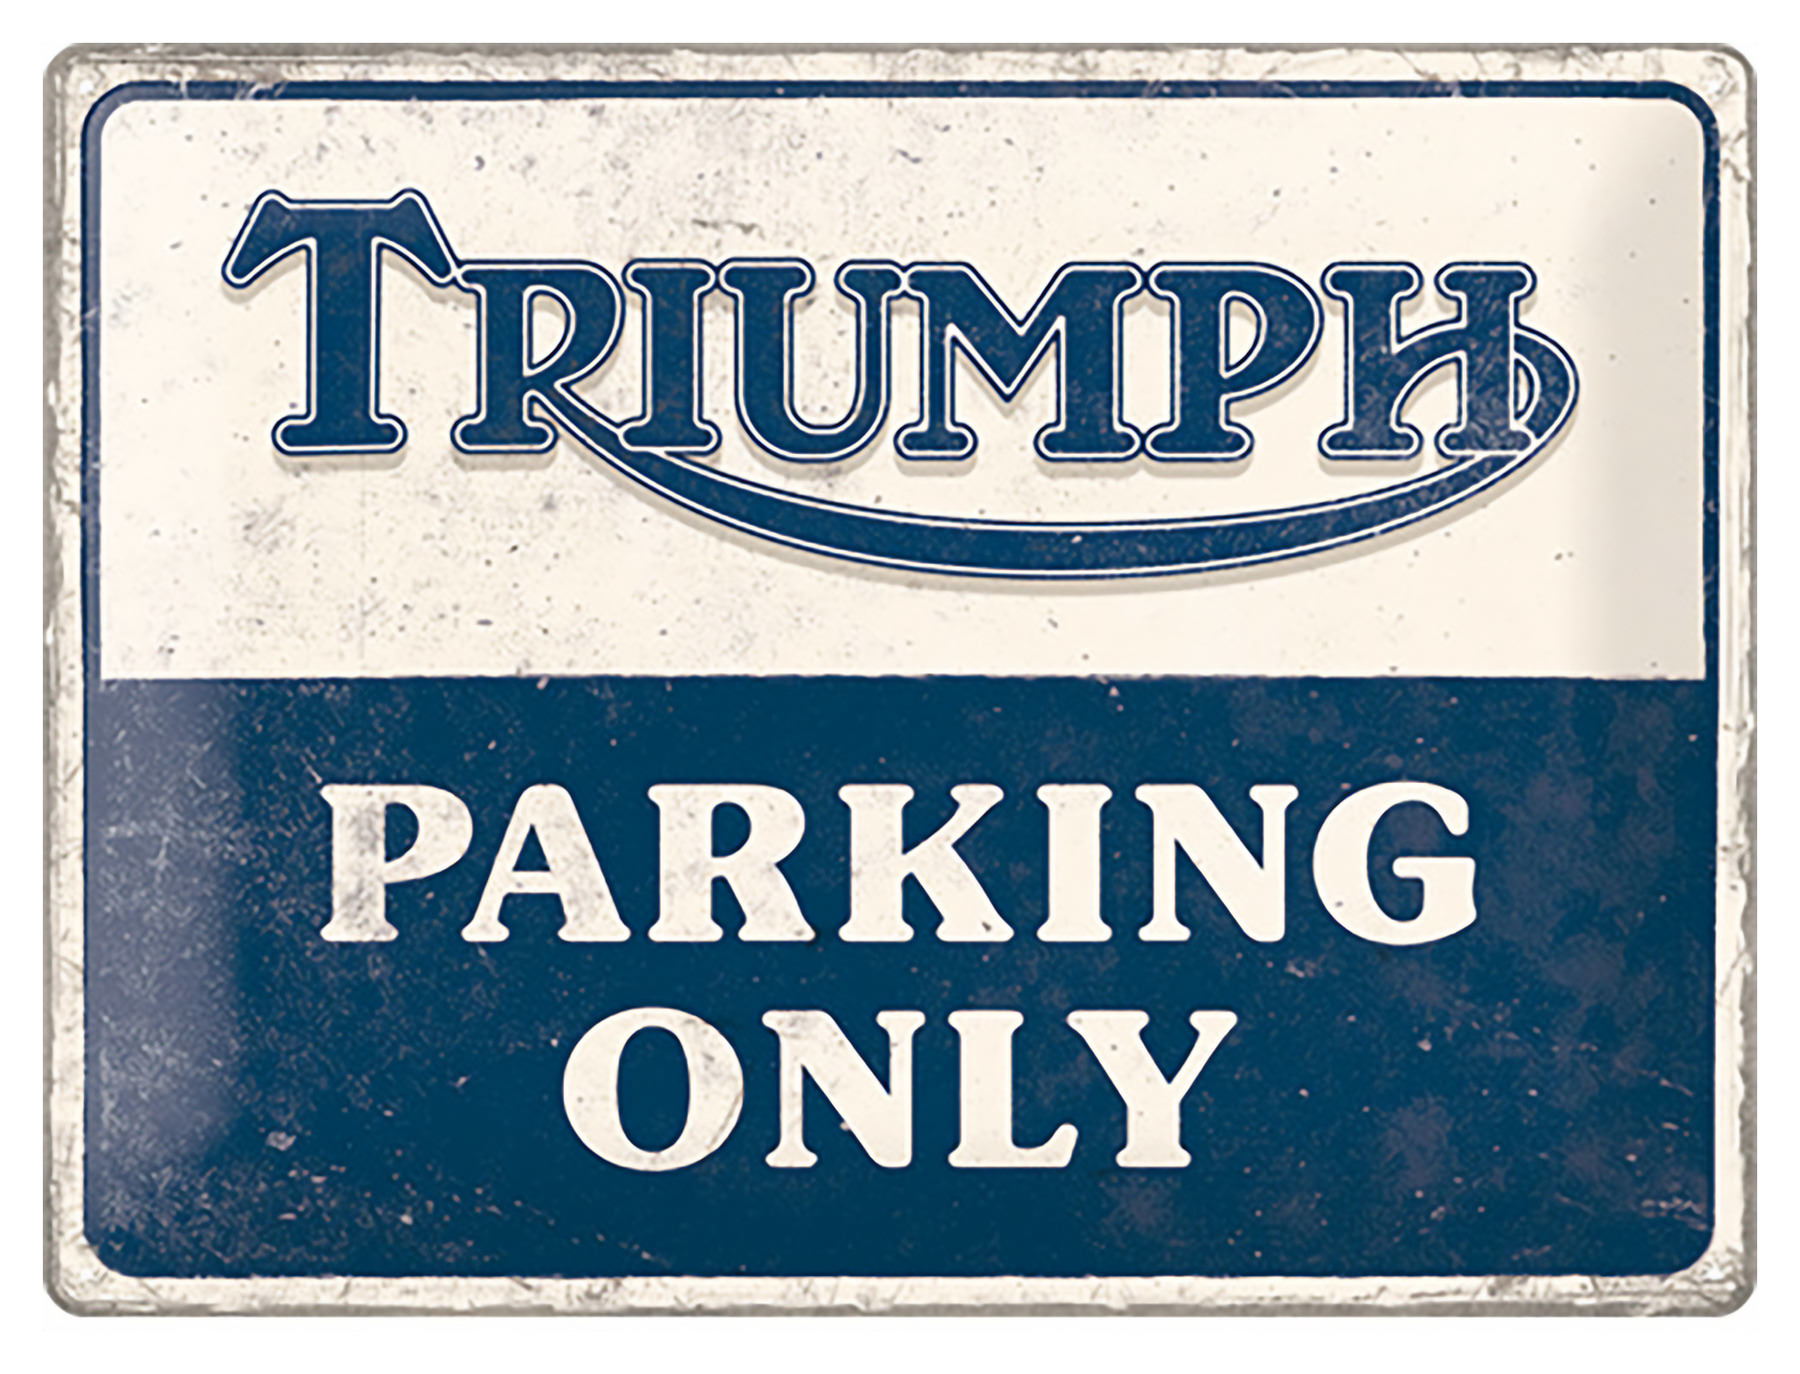 plaque métal vintage triumph parking only